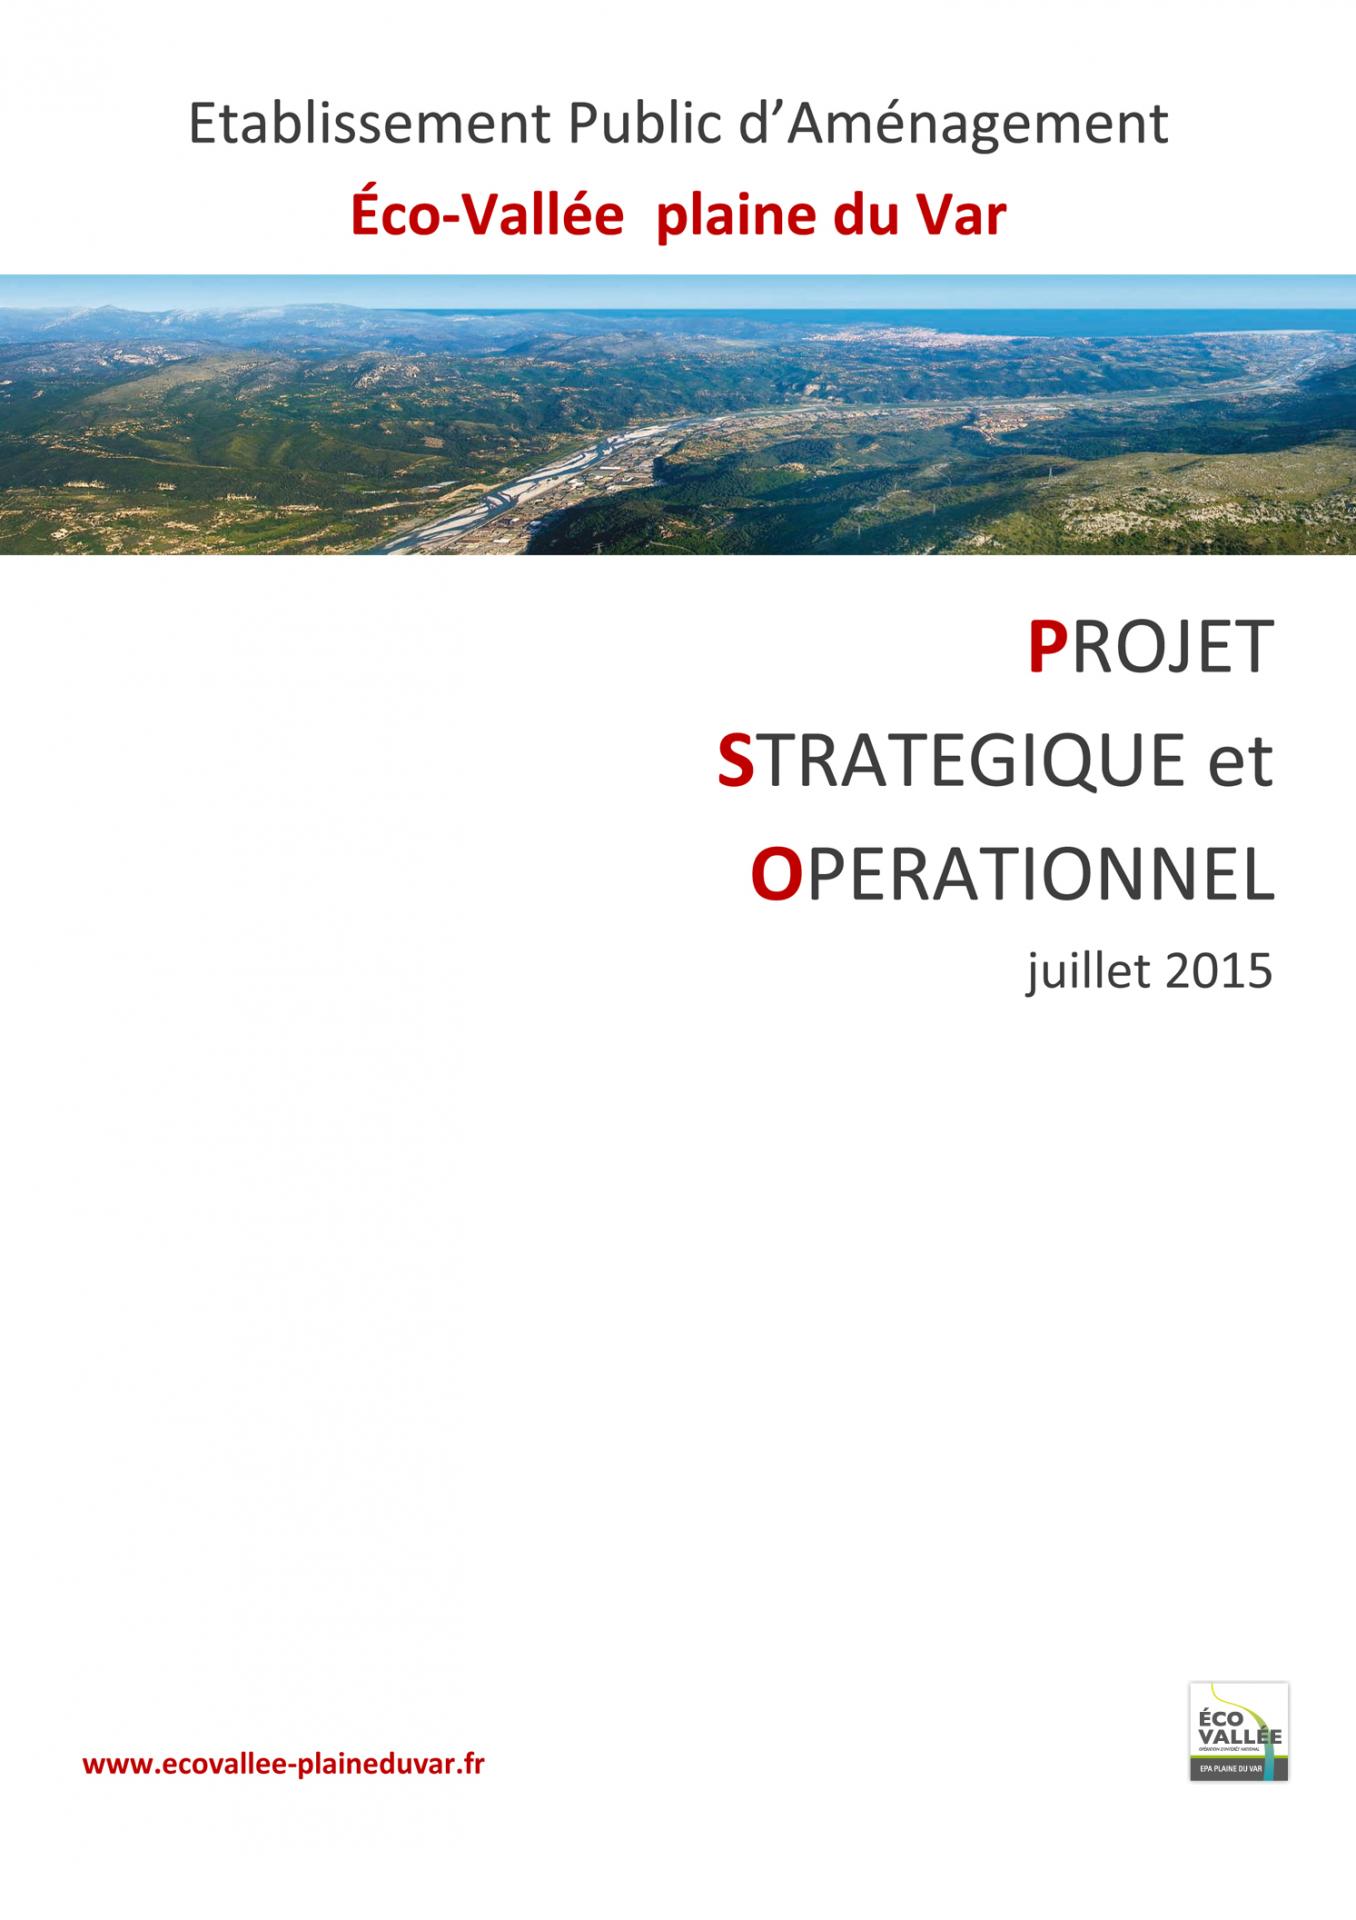 2015-07-09-PSO-PROJET-STRATEGIQUE-et-OPERATIONNEL-EPA-Eco-Vallée-plaine-du-Var-p1